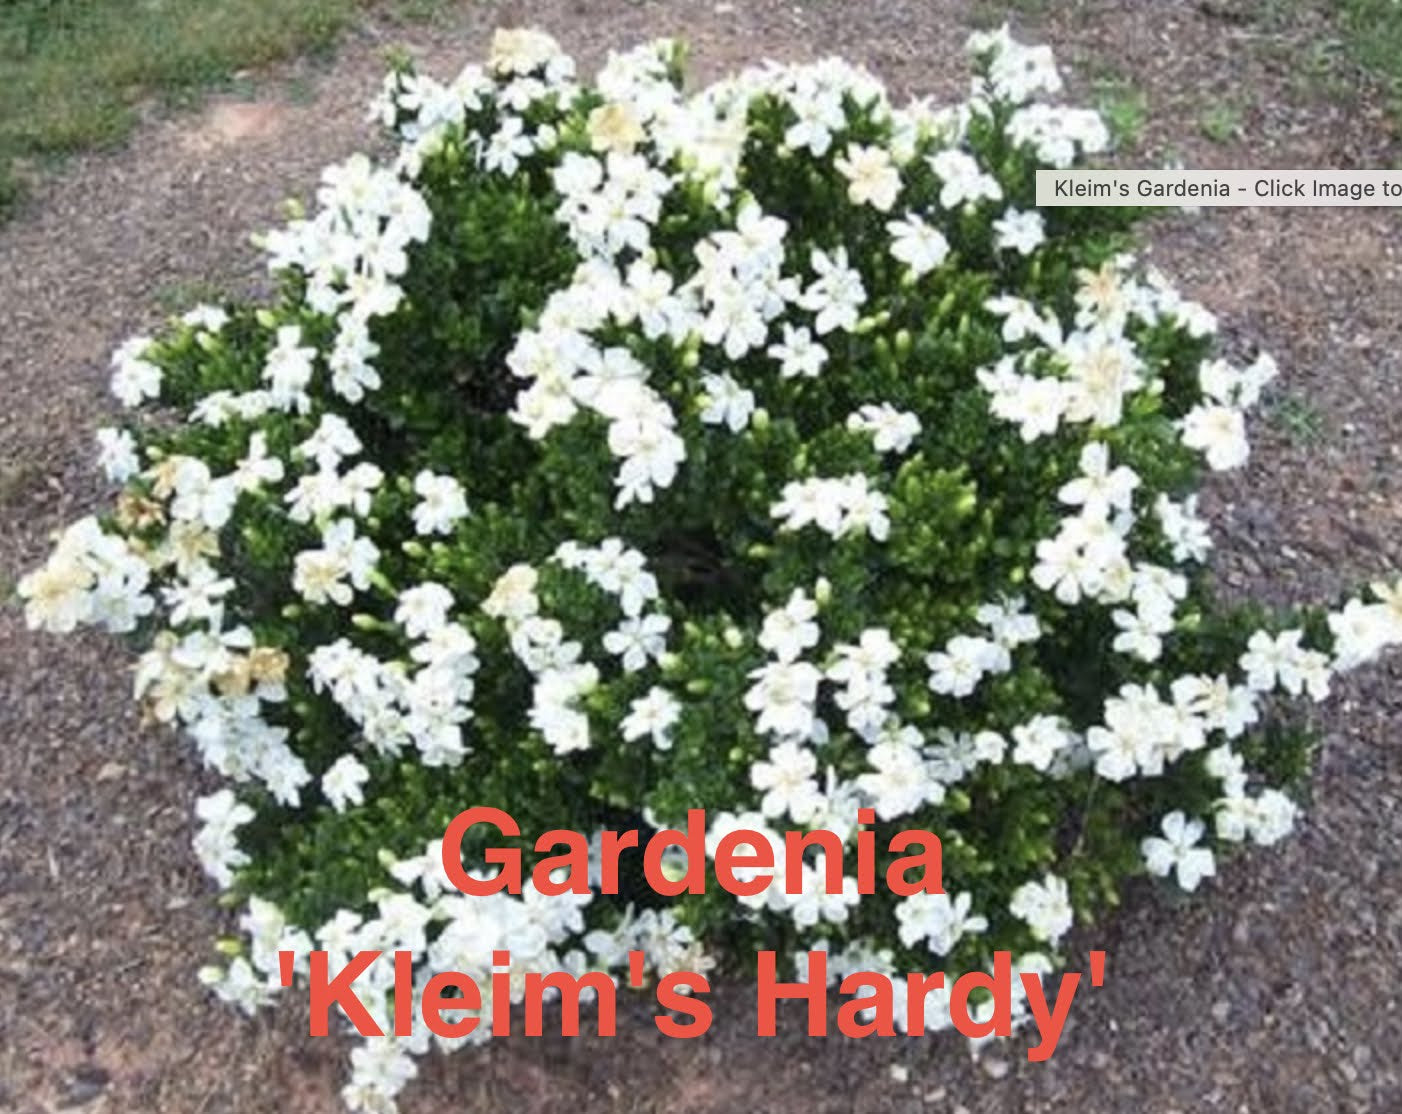 Gardenia 'Kleim's Hardy'